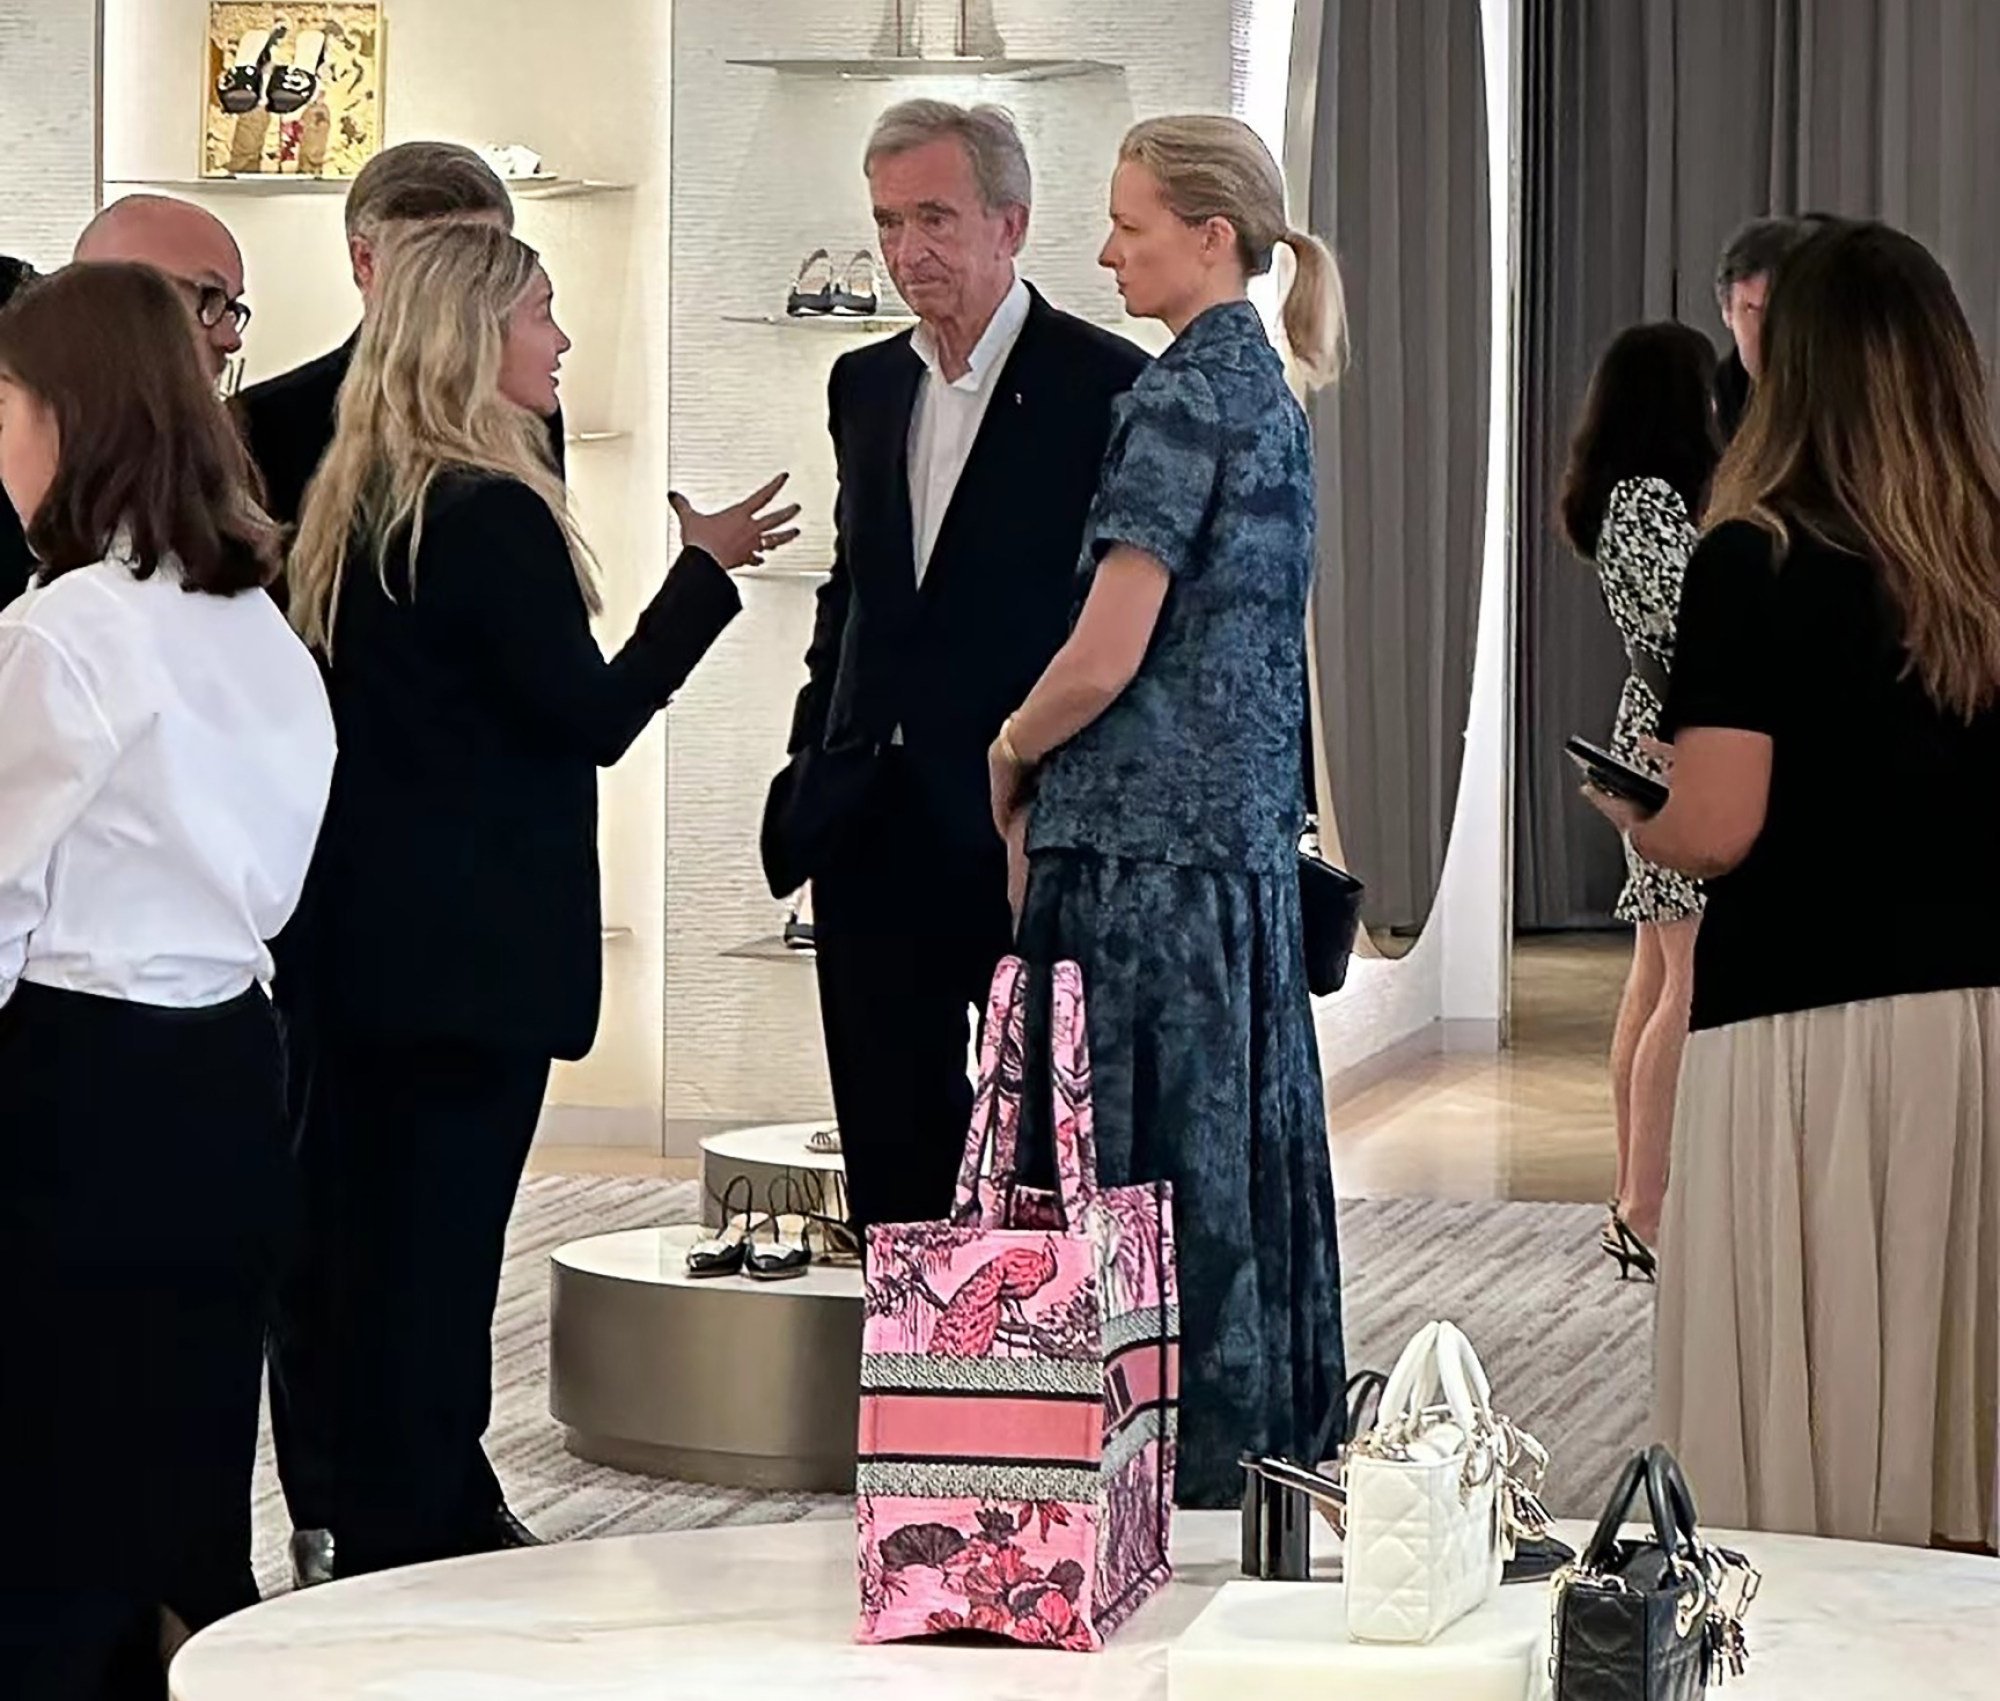 LVMH owner Bernard Arnault visits China after luxury spending rebound